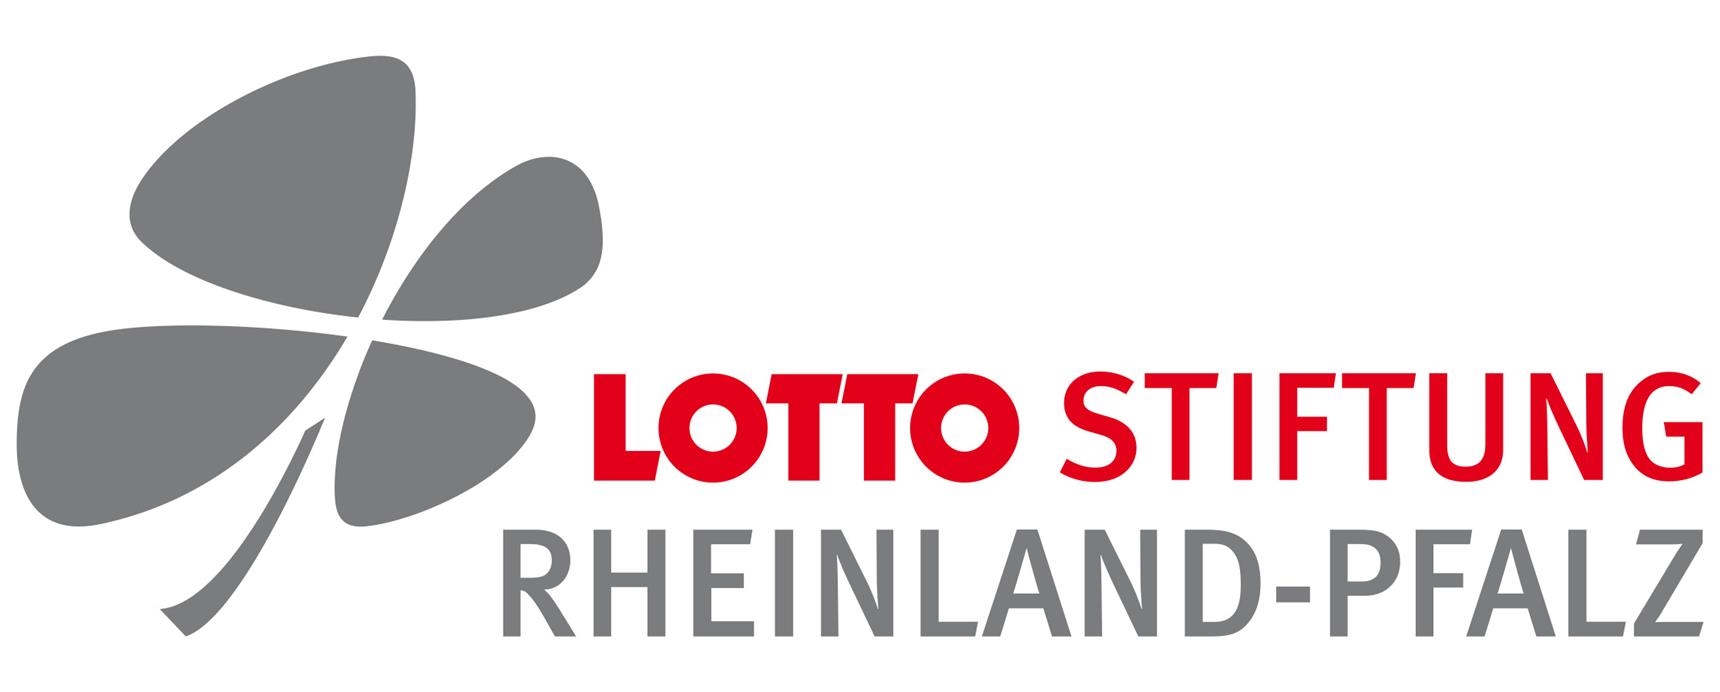 Logo Lotto Rheinland-Pfalz - Stiiftung 